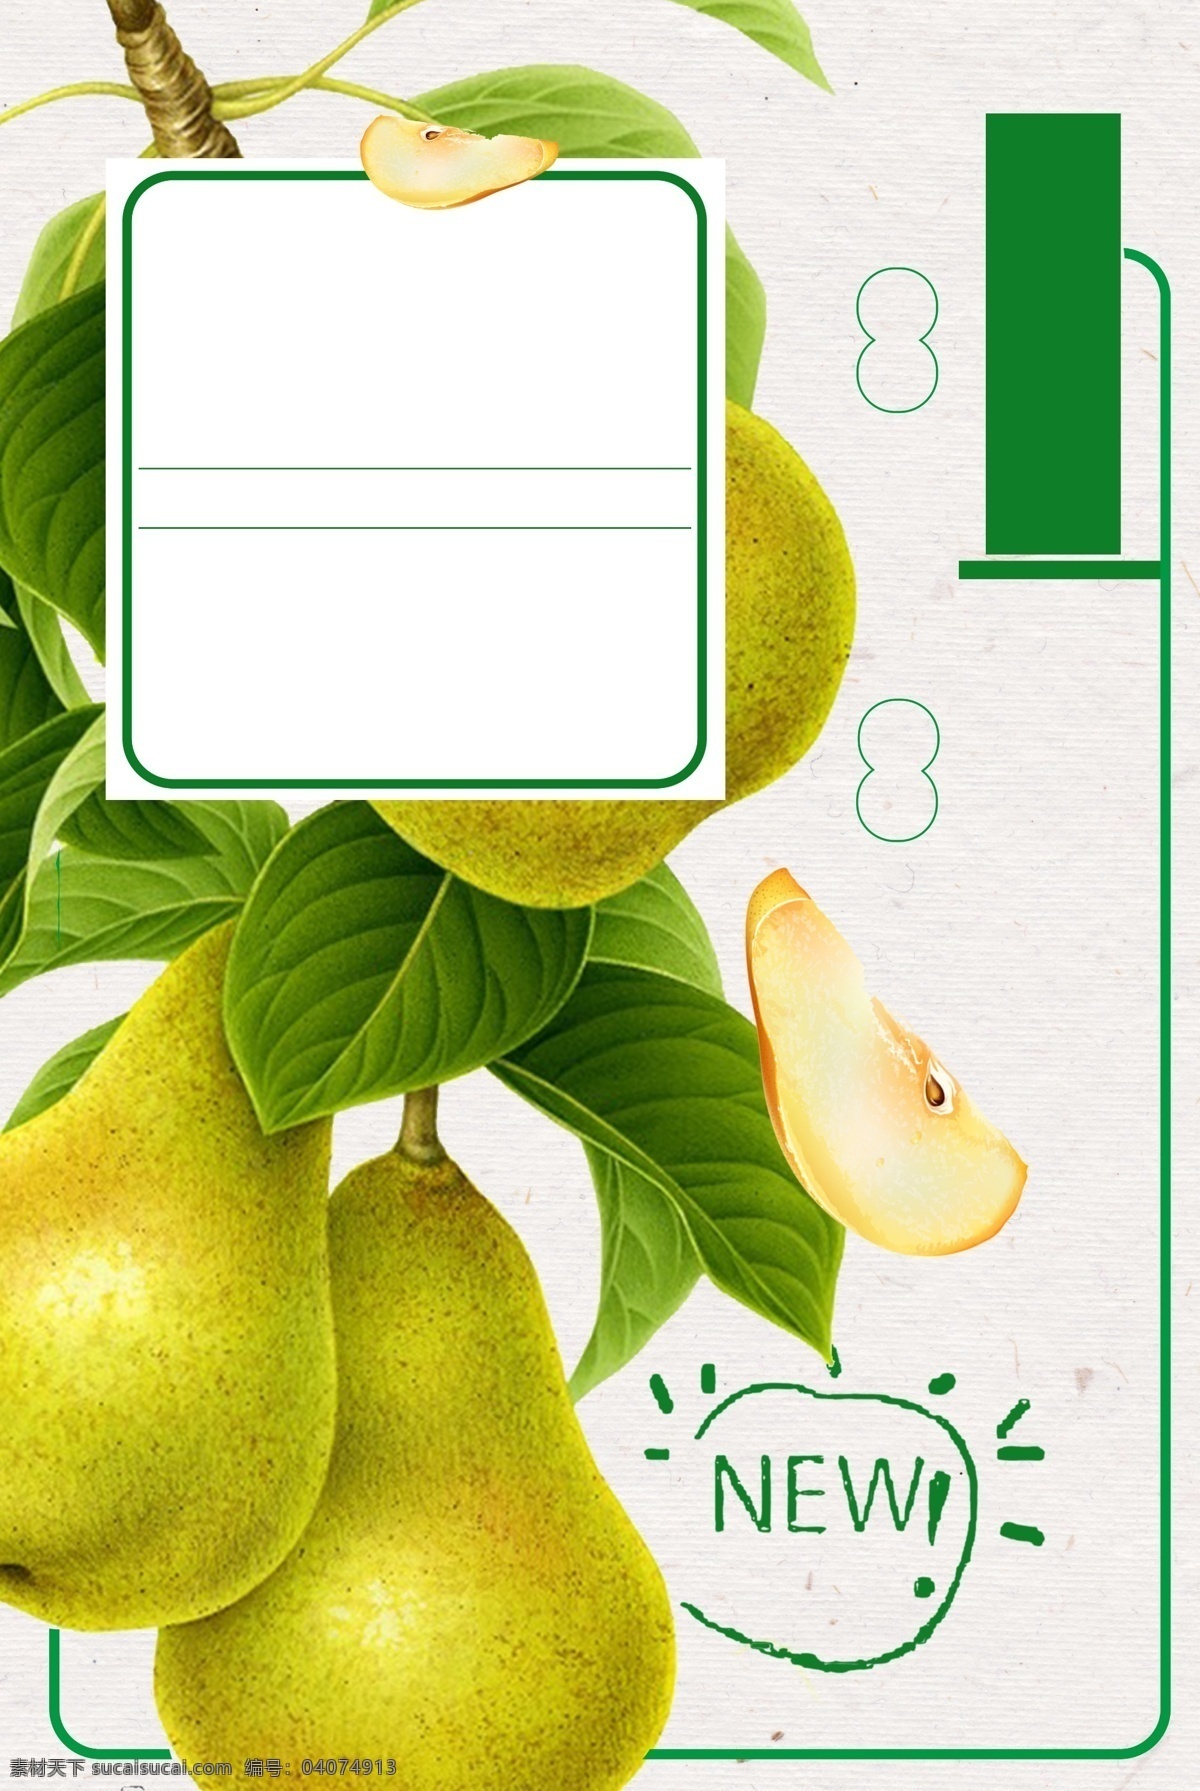 清香 鲜嫩 水果 梨子 广告 背景 广告背景 果汁 新鲜 果树 绿色边框 绿色英文 果肉